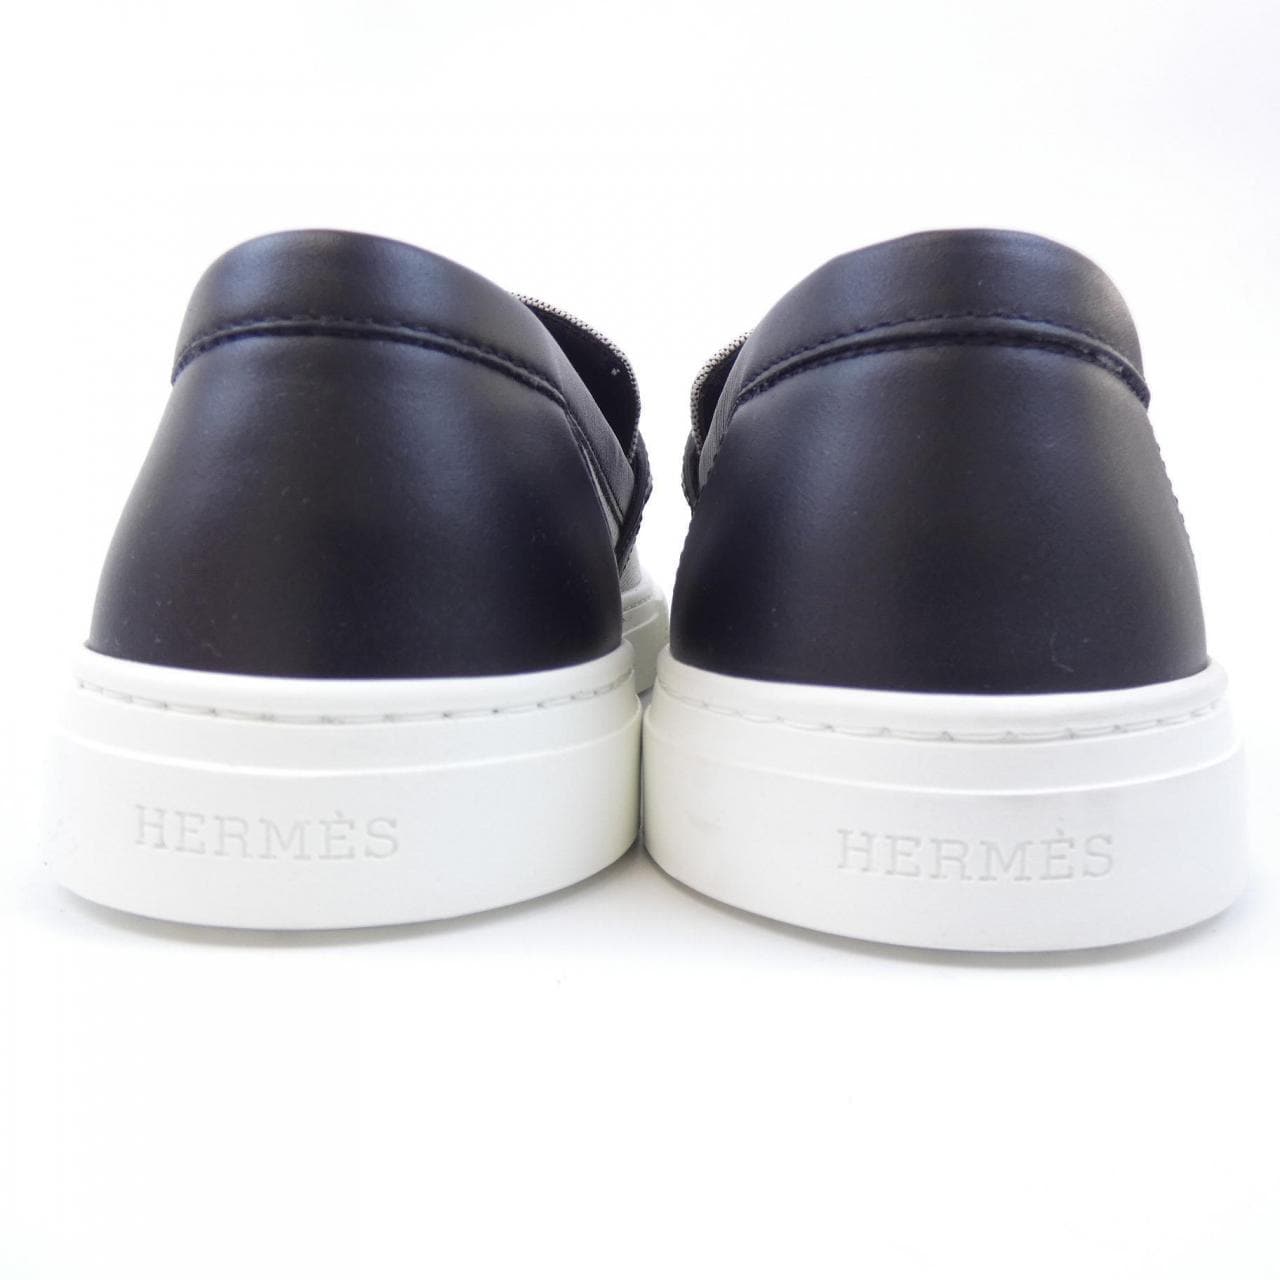 HERMES愛馬仕運動鞋